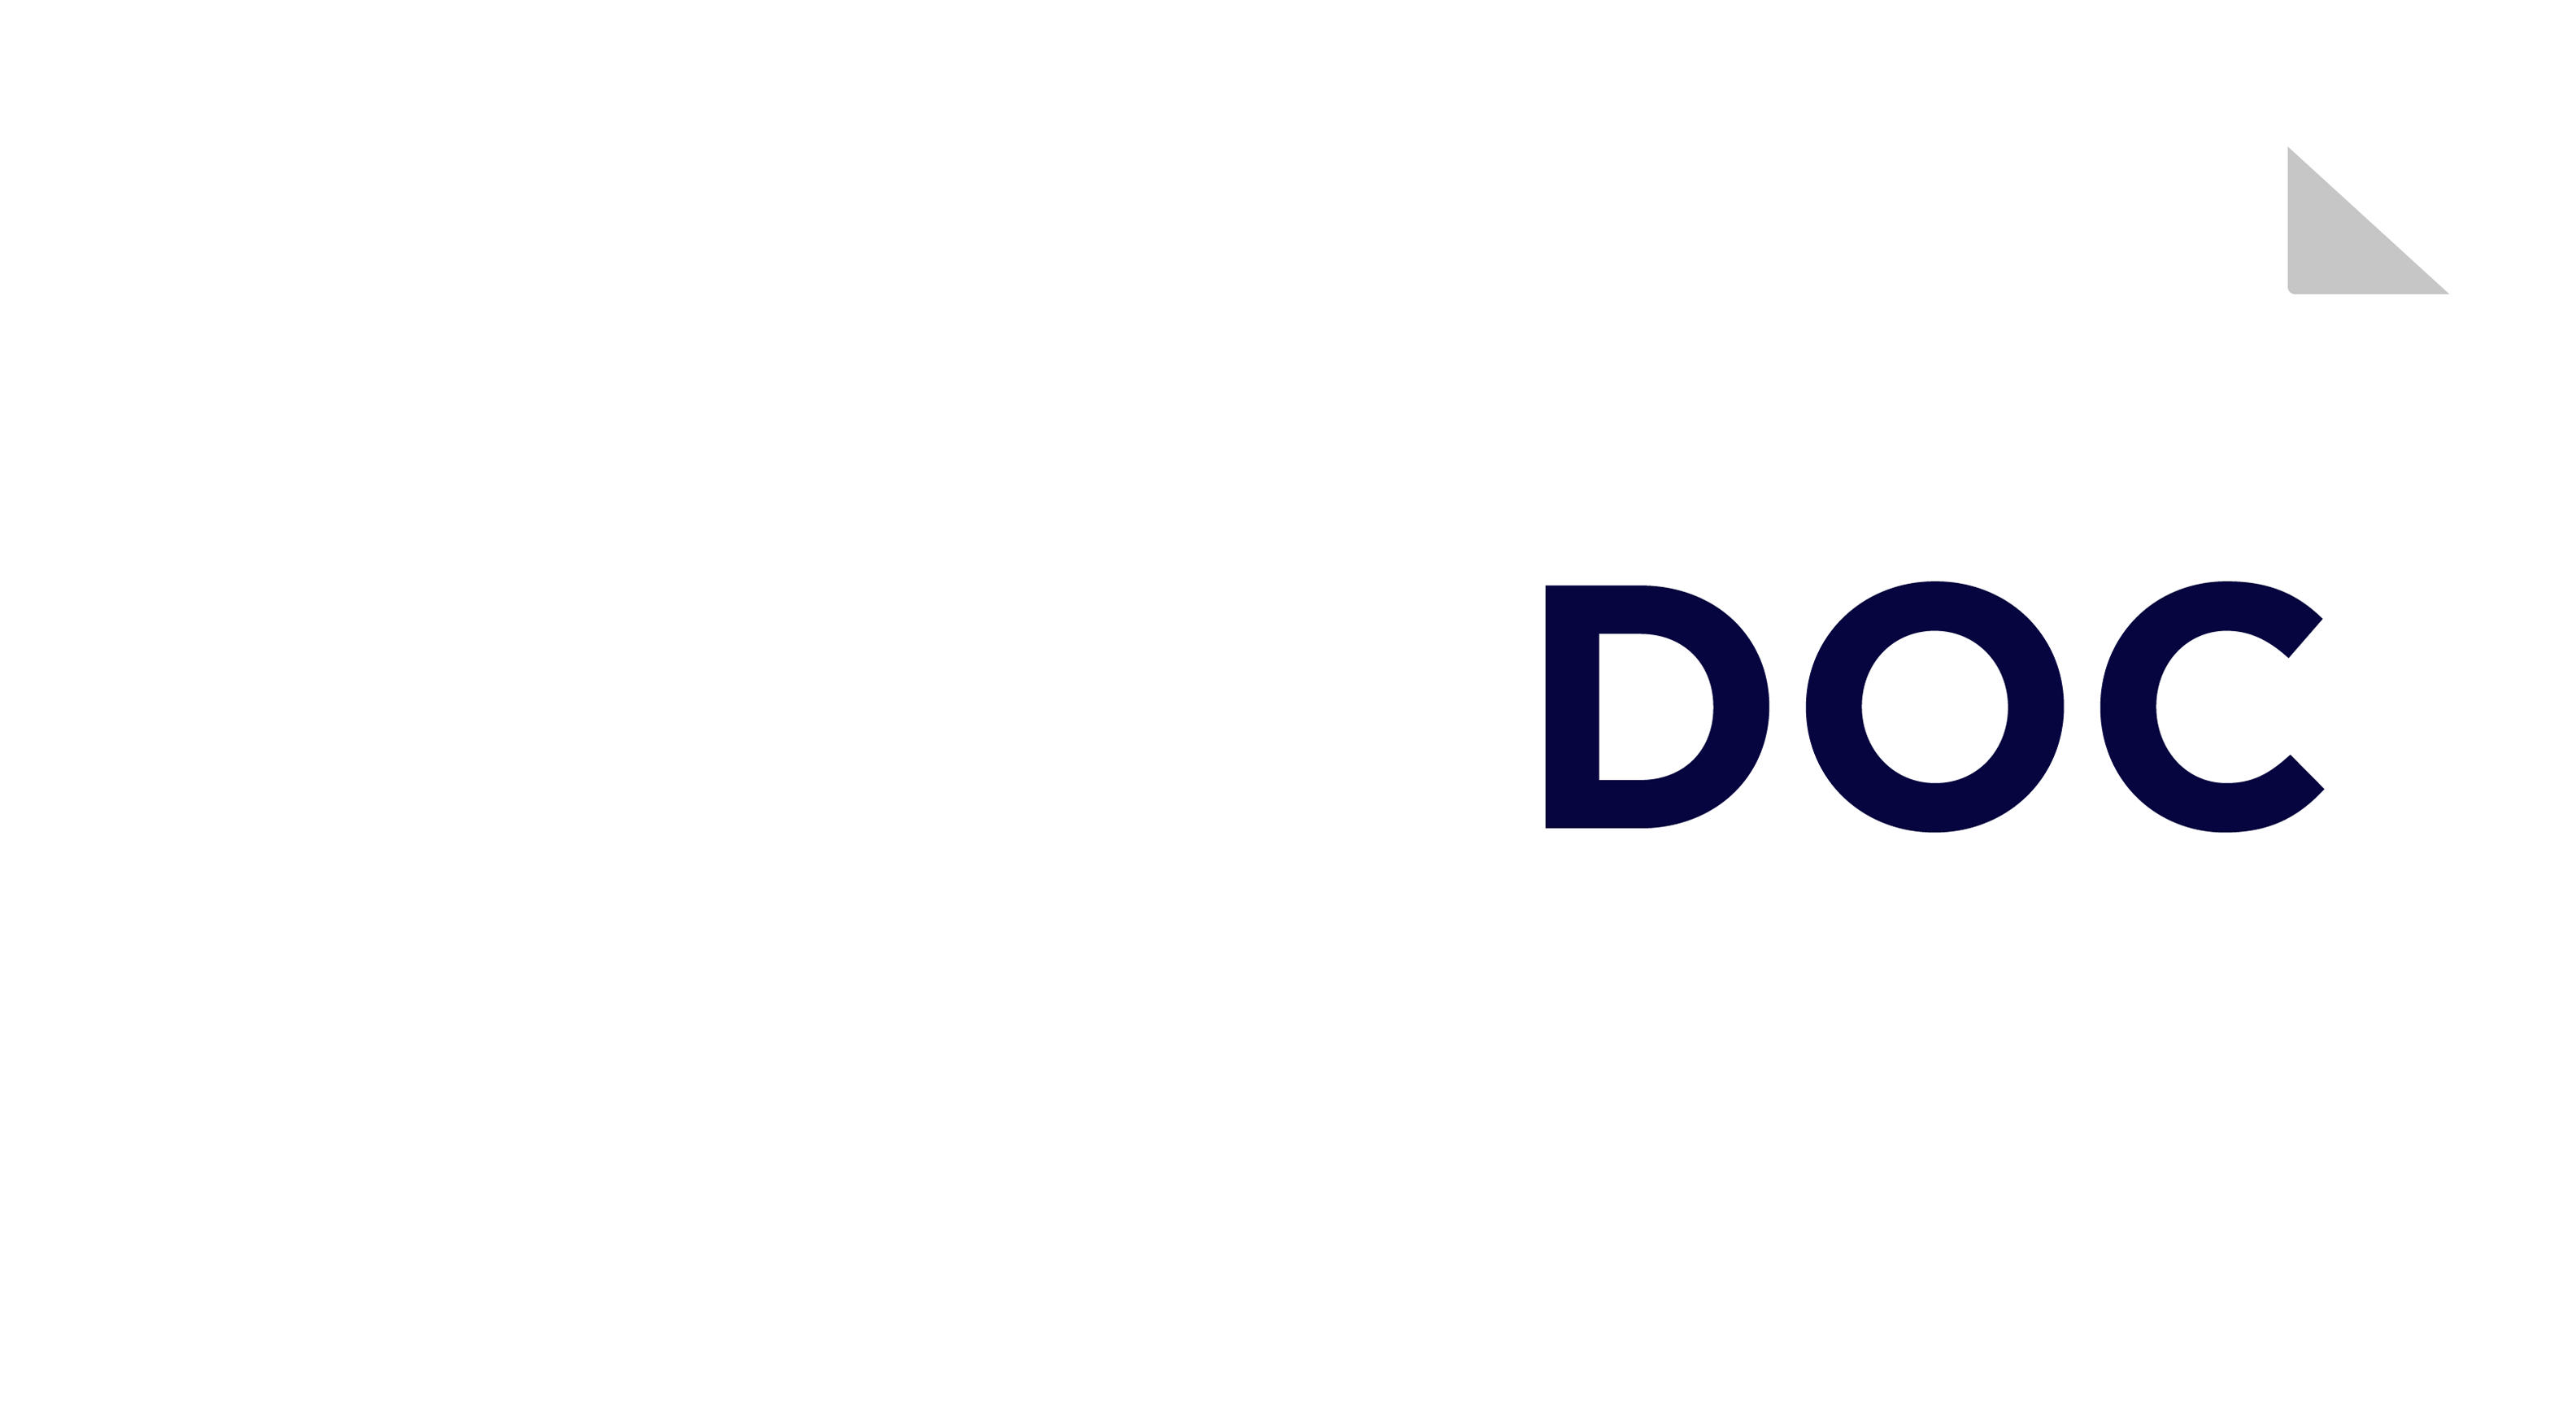 CargoDoc